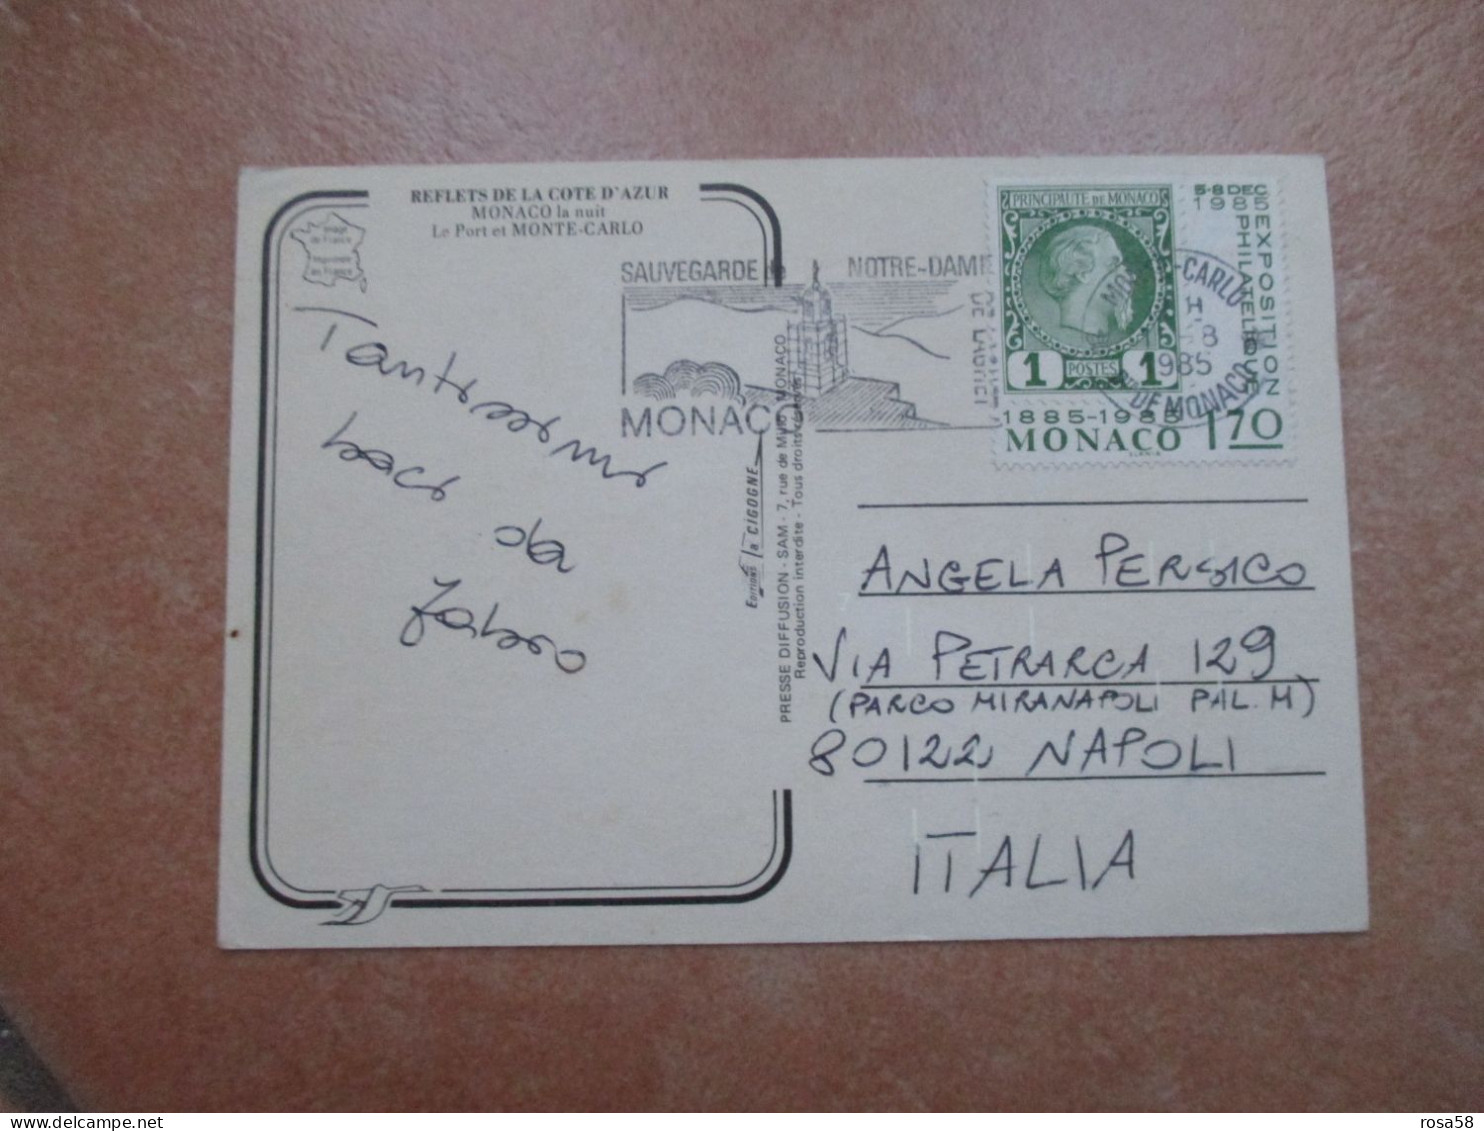 1985 Annullo Meccanico SAUVEGARDE Notre Dame Su F.bollo 1,70 1885 1985 - Lettres & Documents